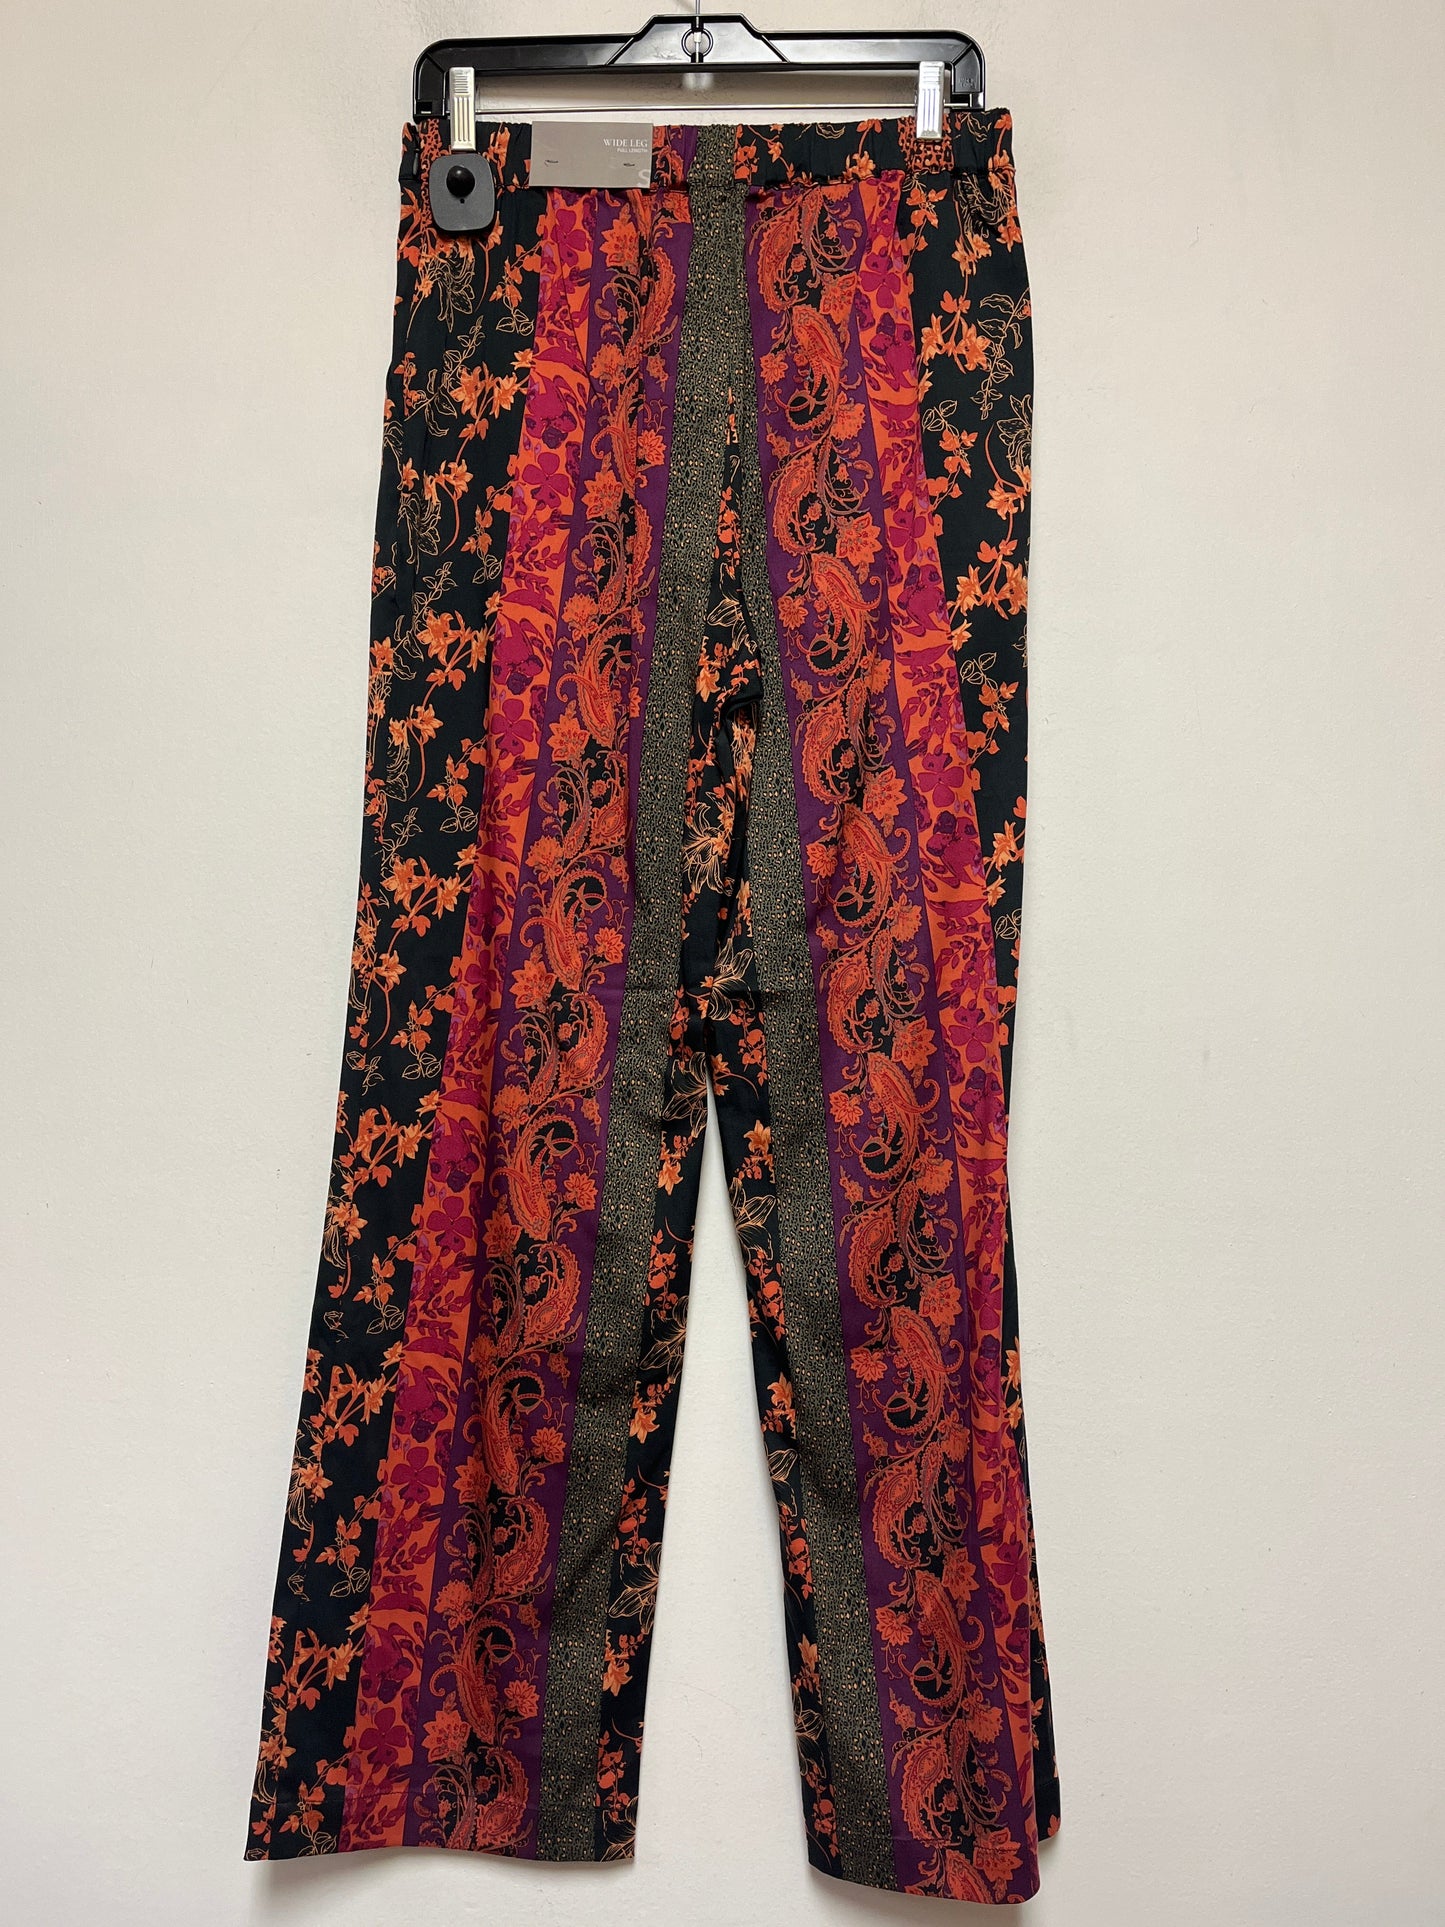 Floral Print Pants Wide Leg Soft Surroundings, Size 6